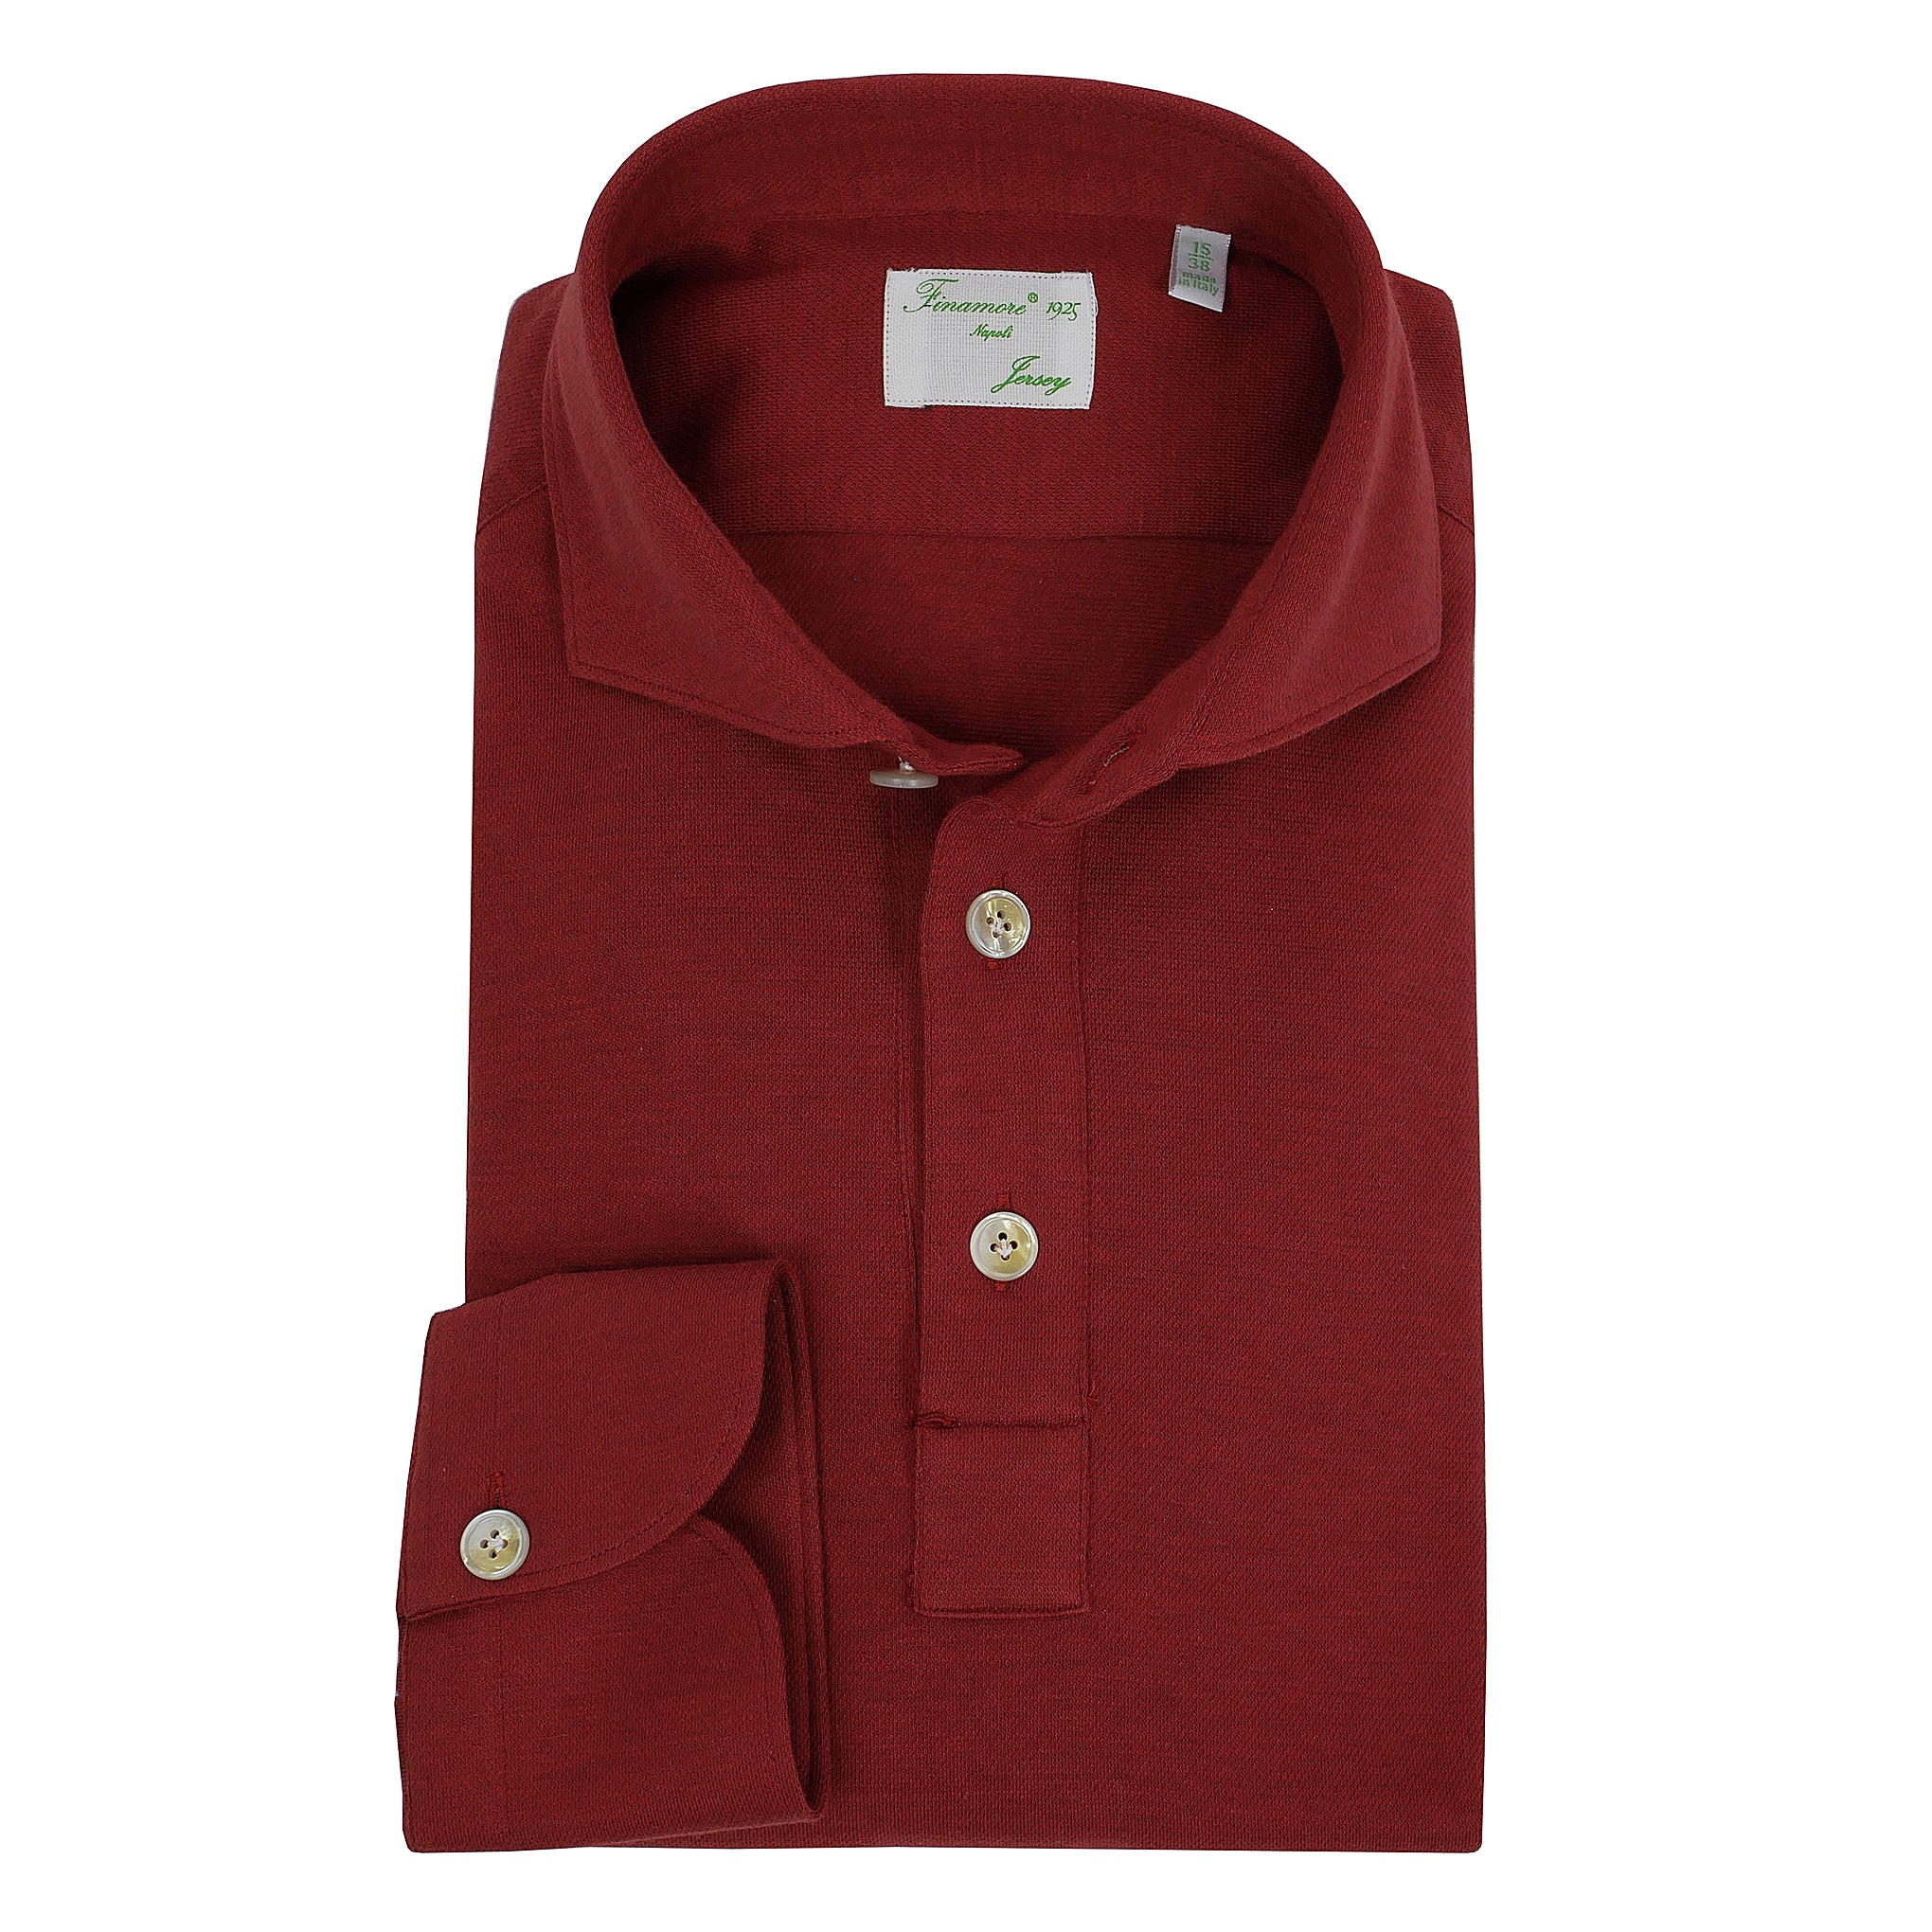 Polo Orlando jersey dark red cotton cashmere. Finamore 1925